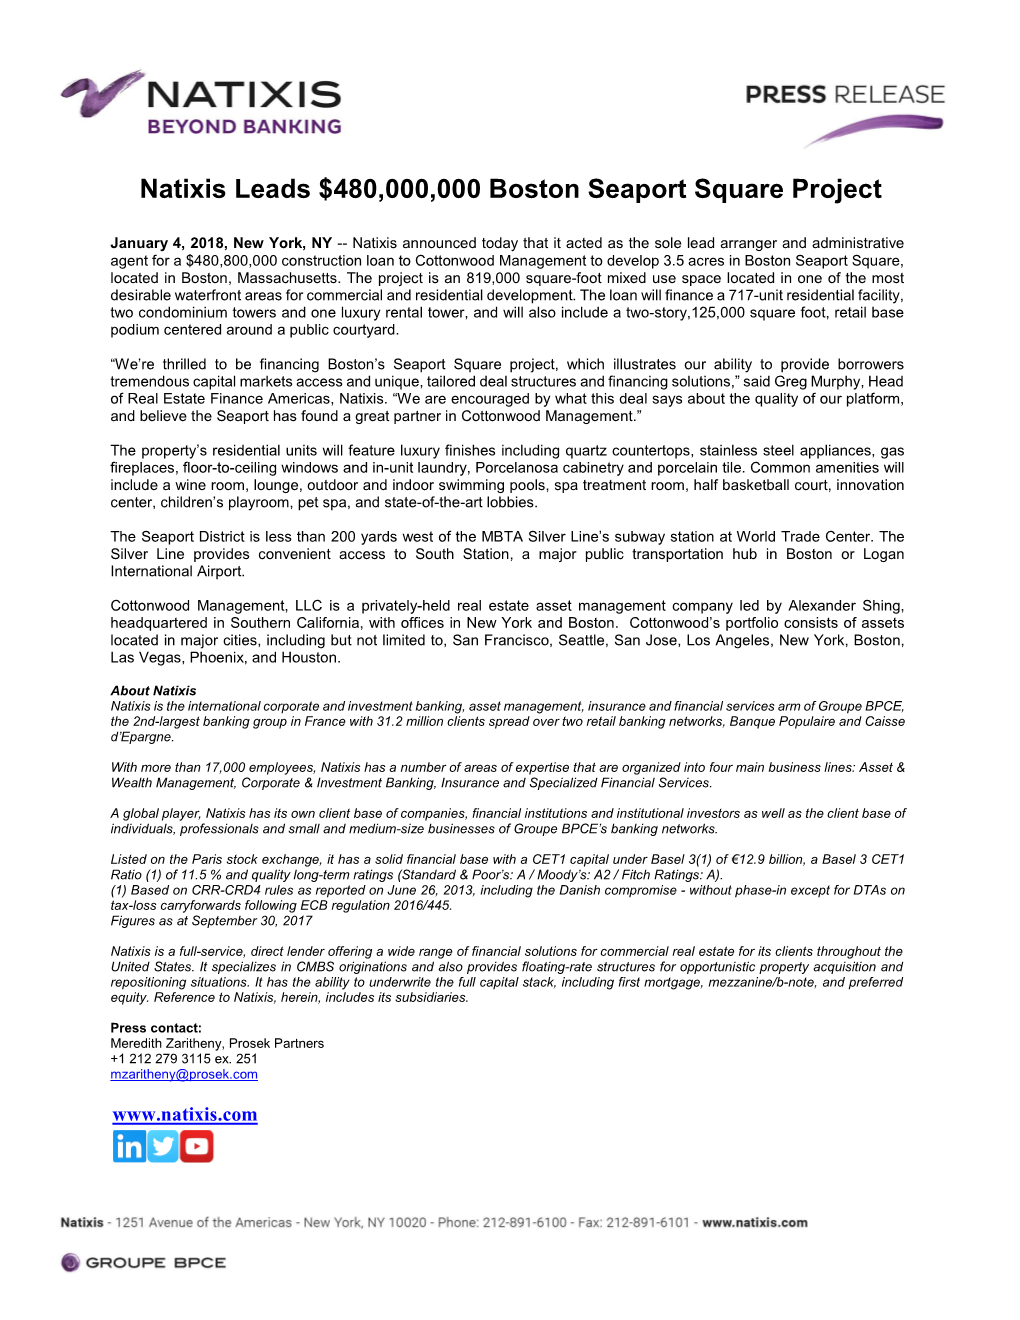 Natixis Leads $480,000,000 Boston Seaport Square Project